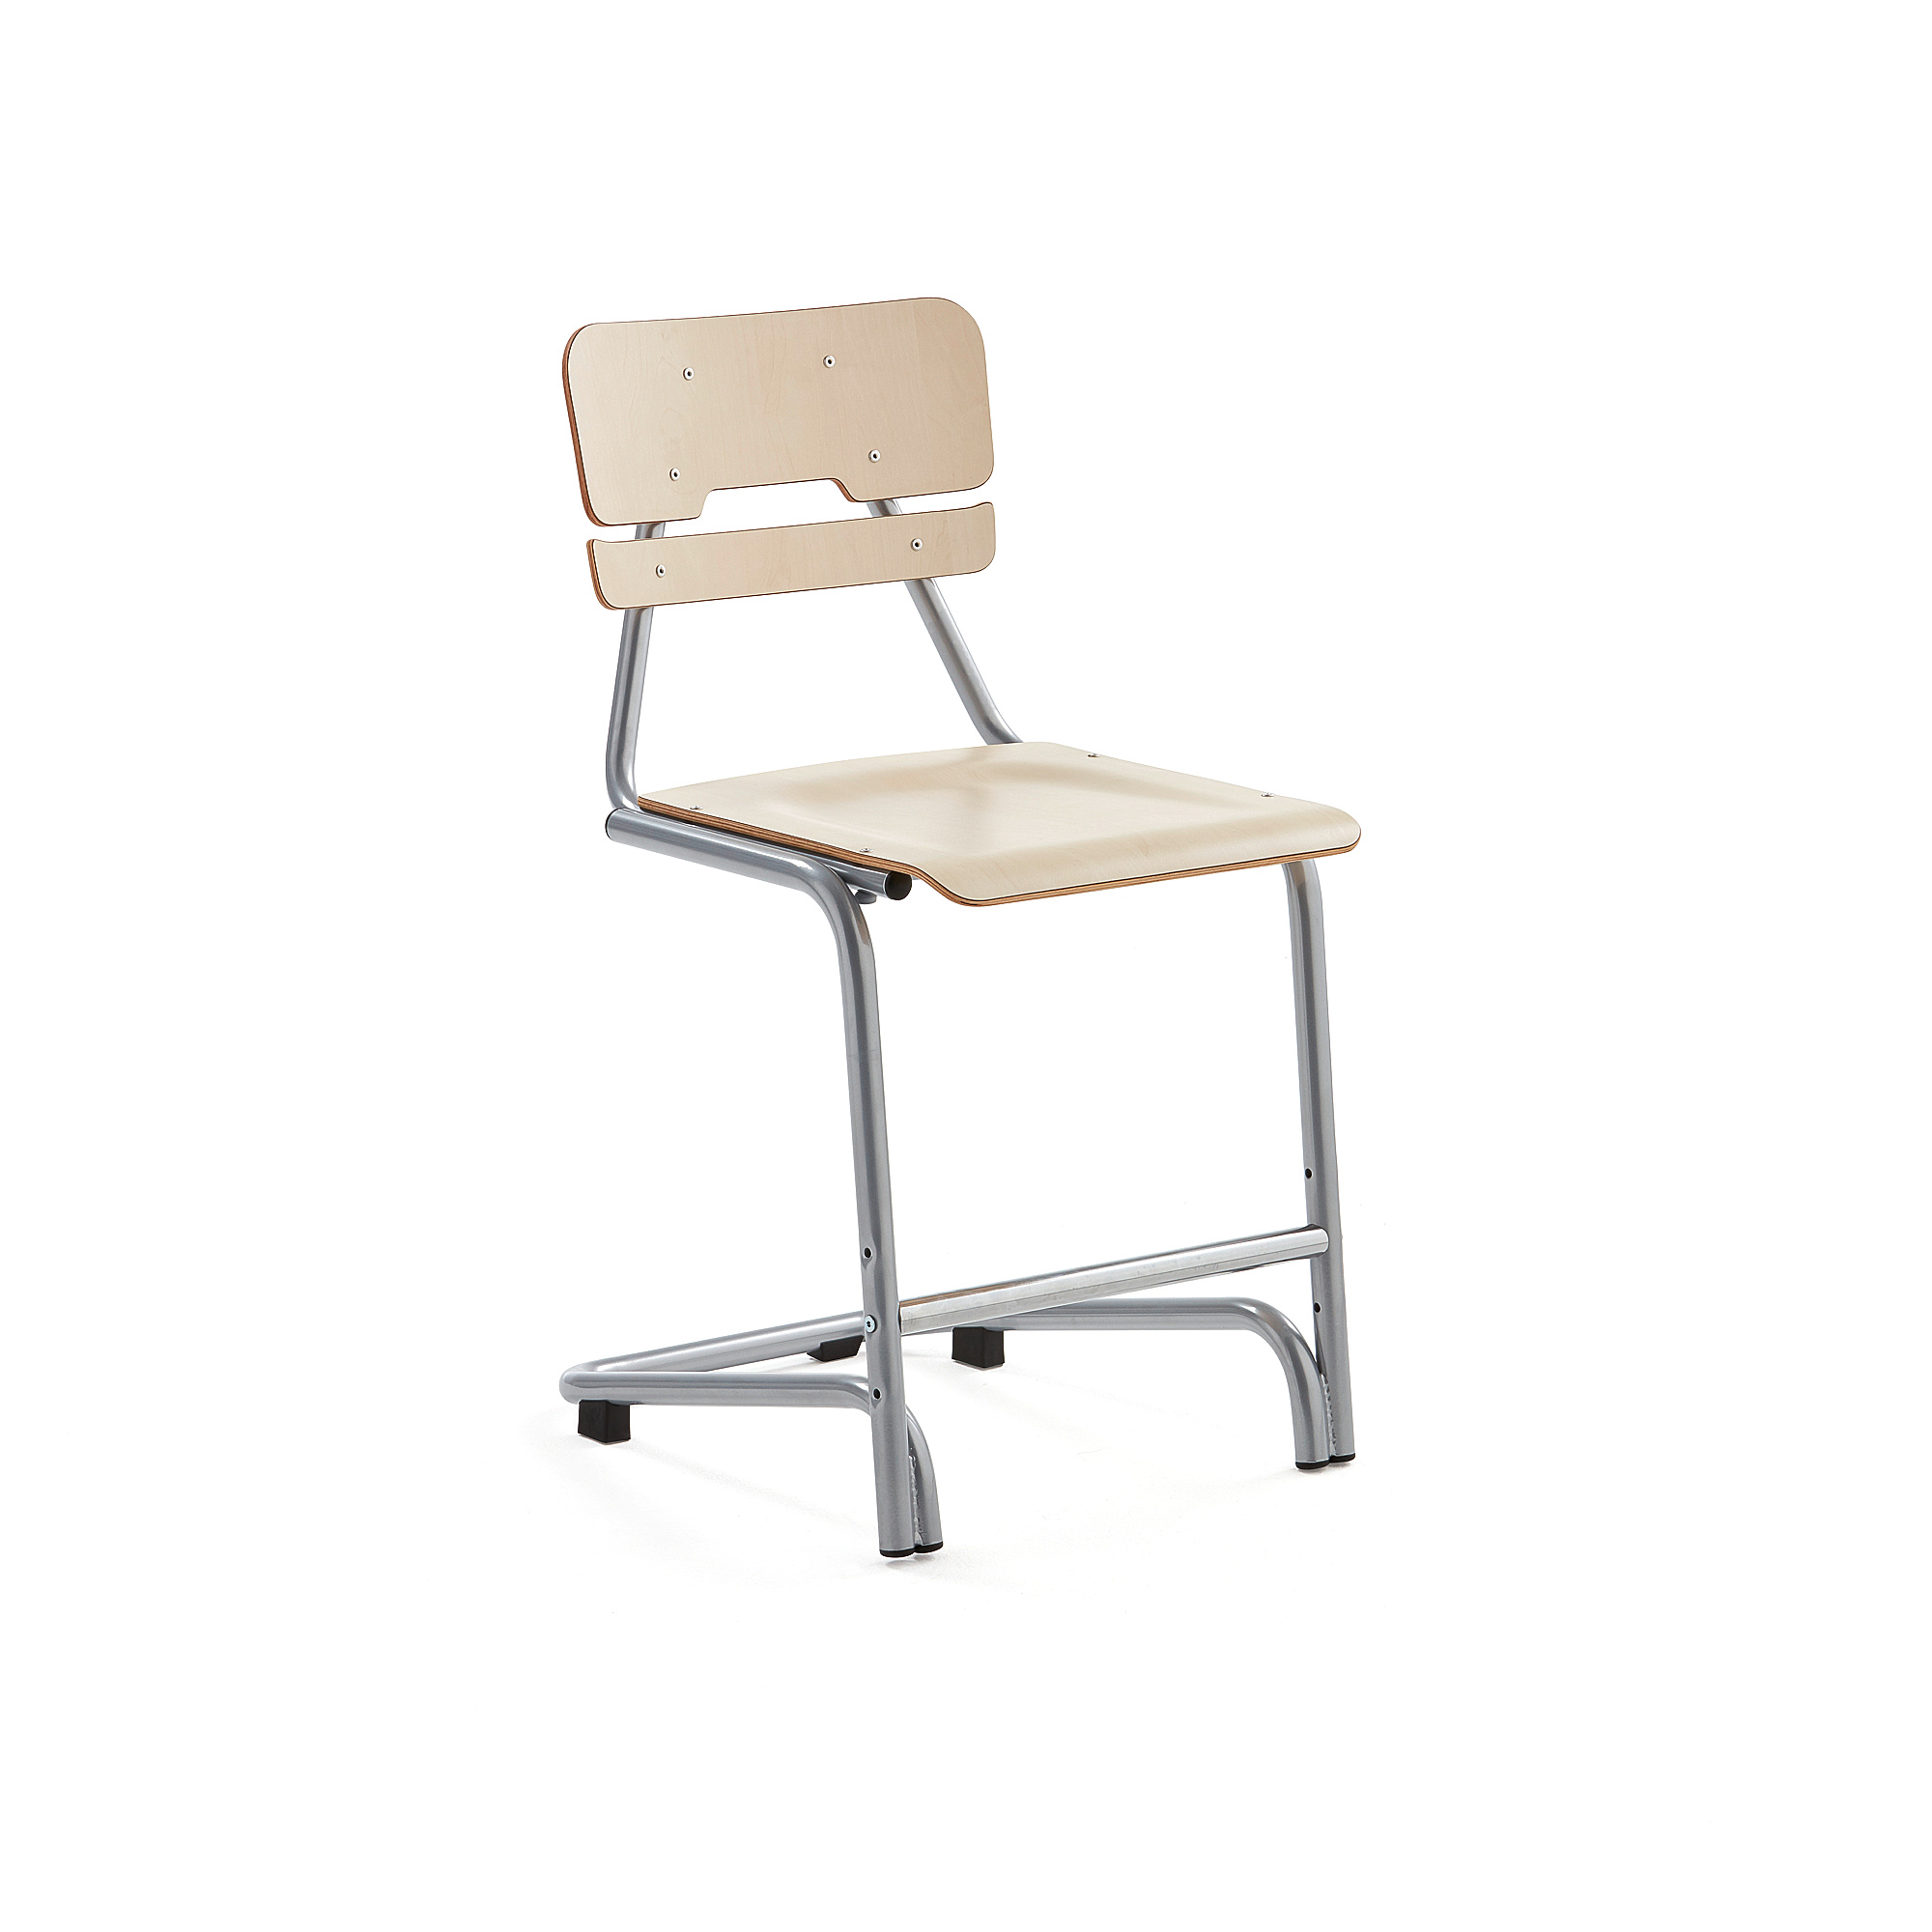 Školní židle DOCTRINA, výška 500 mm, bříza